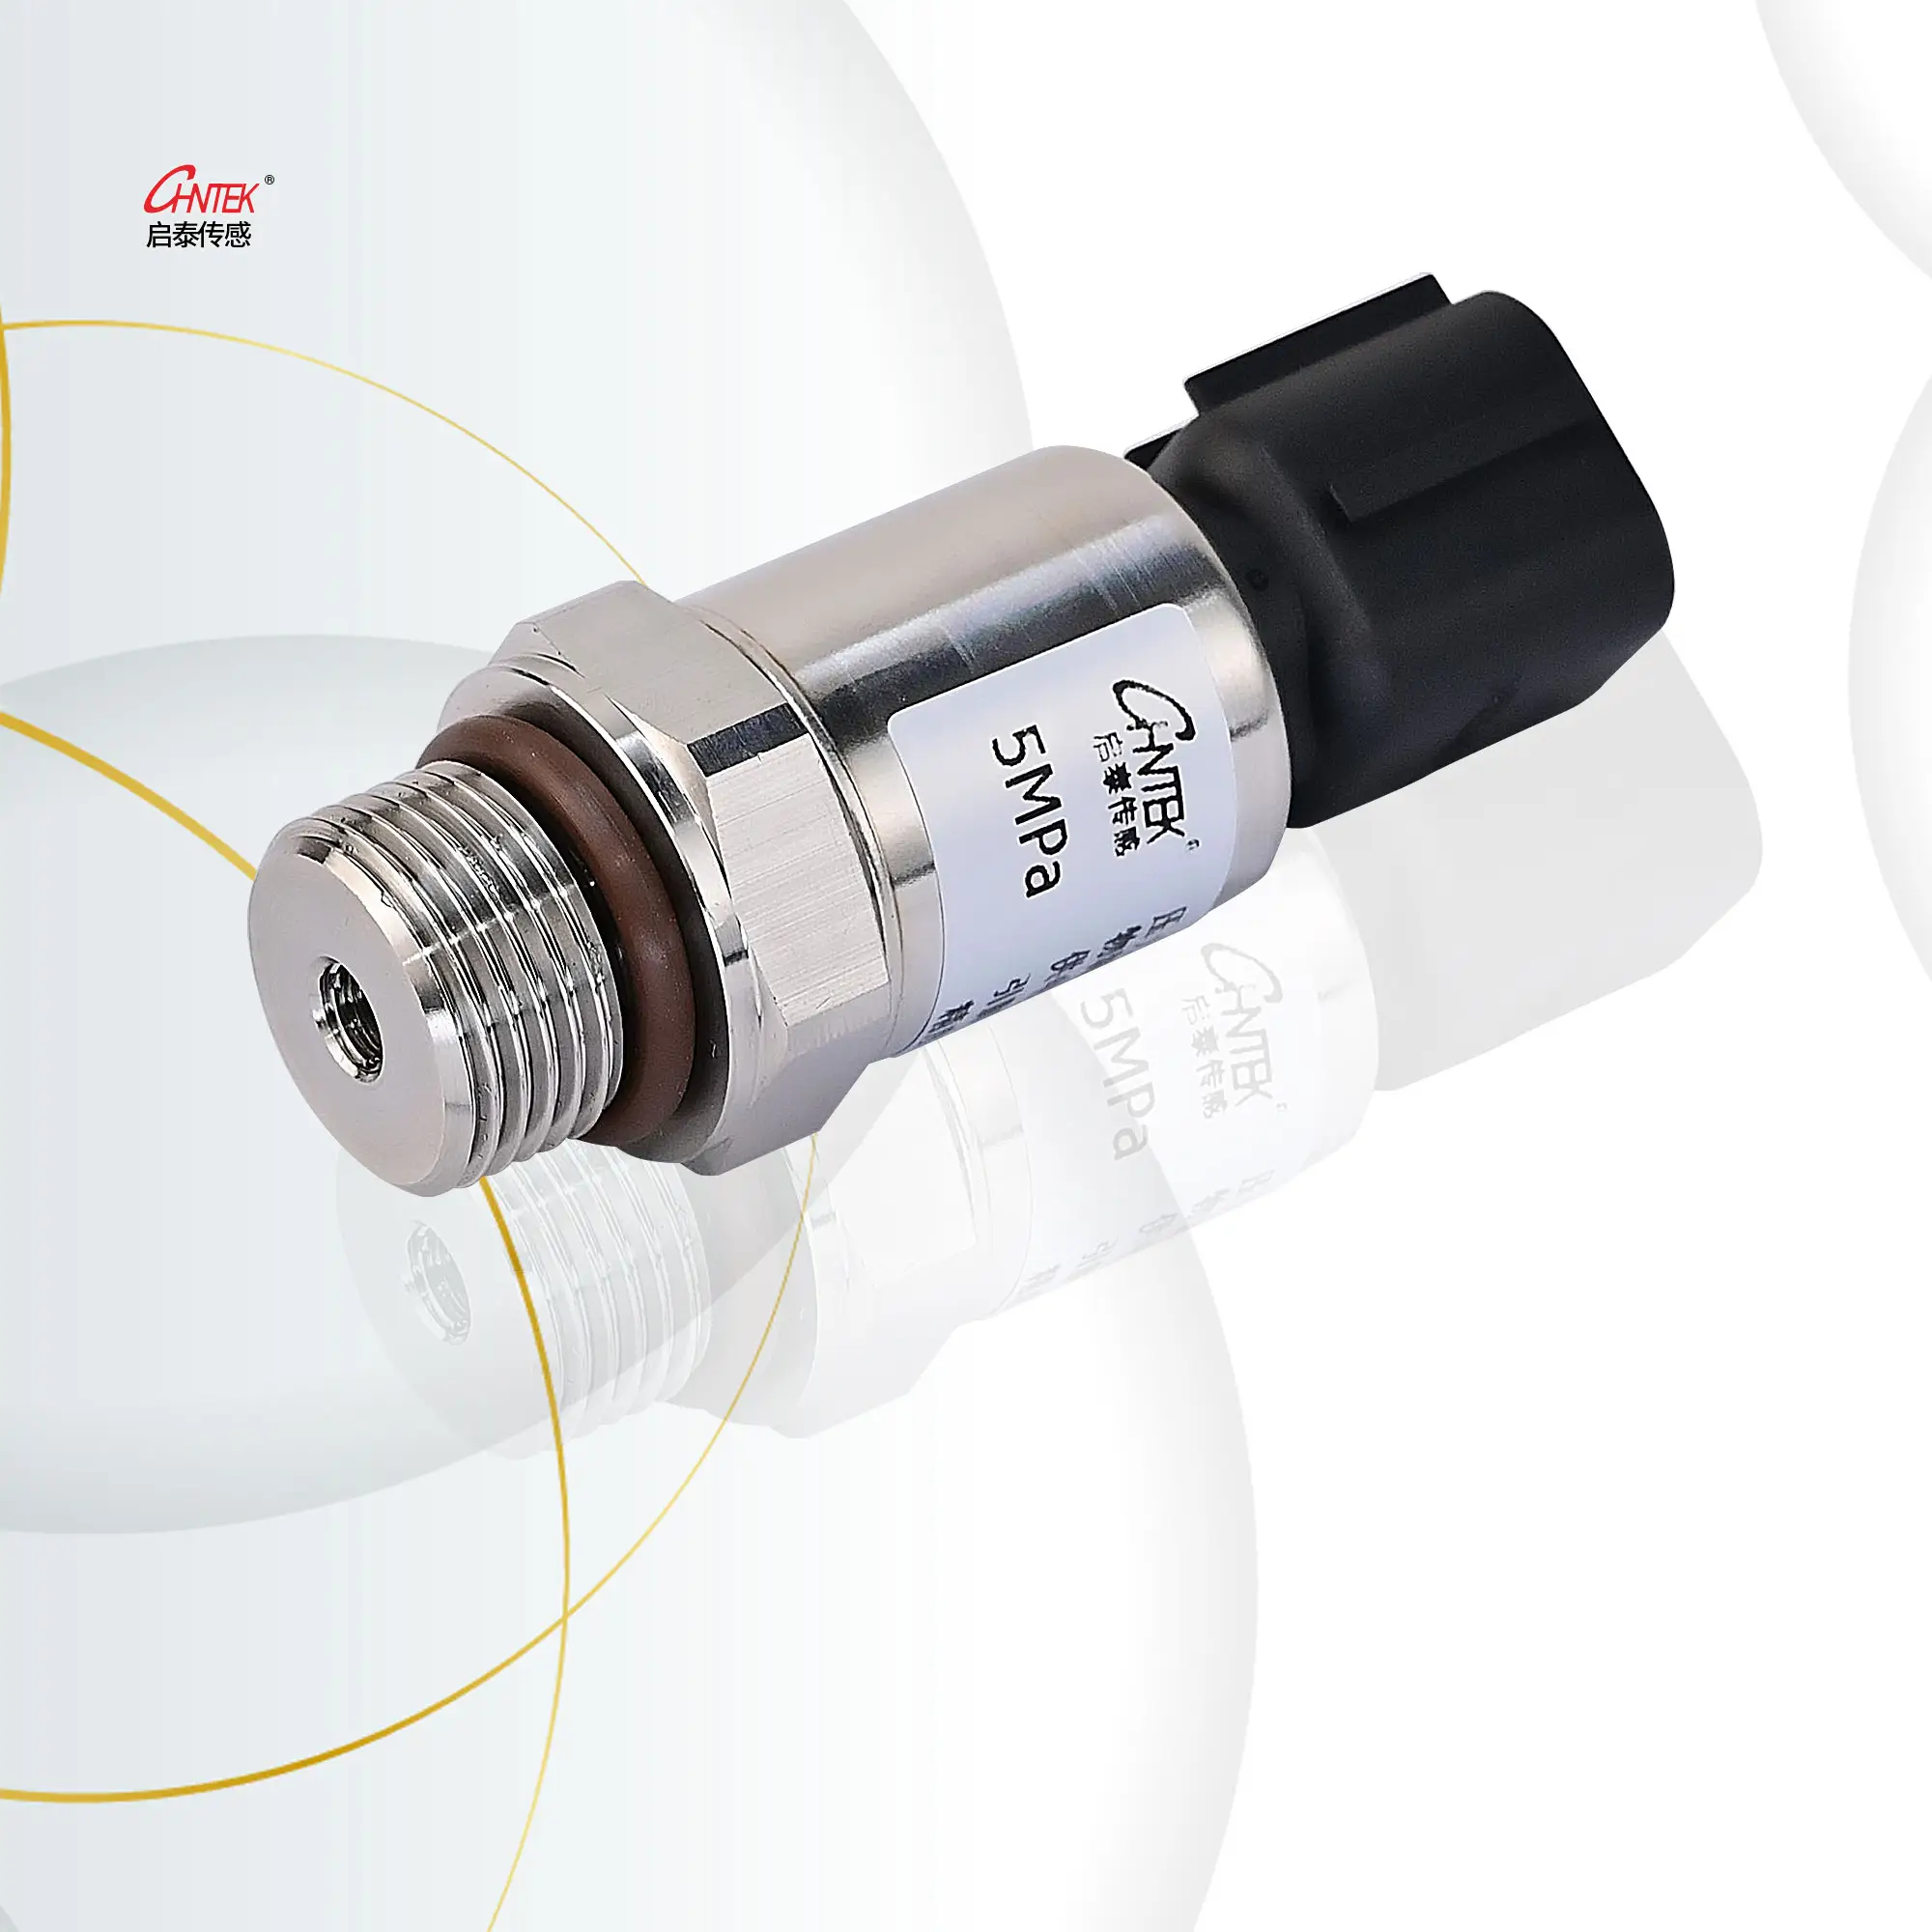 Cina Chntek trasmettitore di pressione a basso costo di alta qualità 0.5-4.5V 4 ~ 20mA trasmettitore di pressione 0-10v